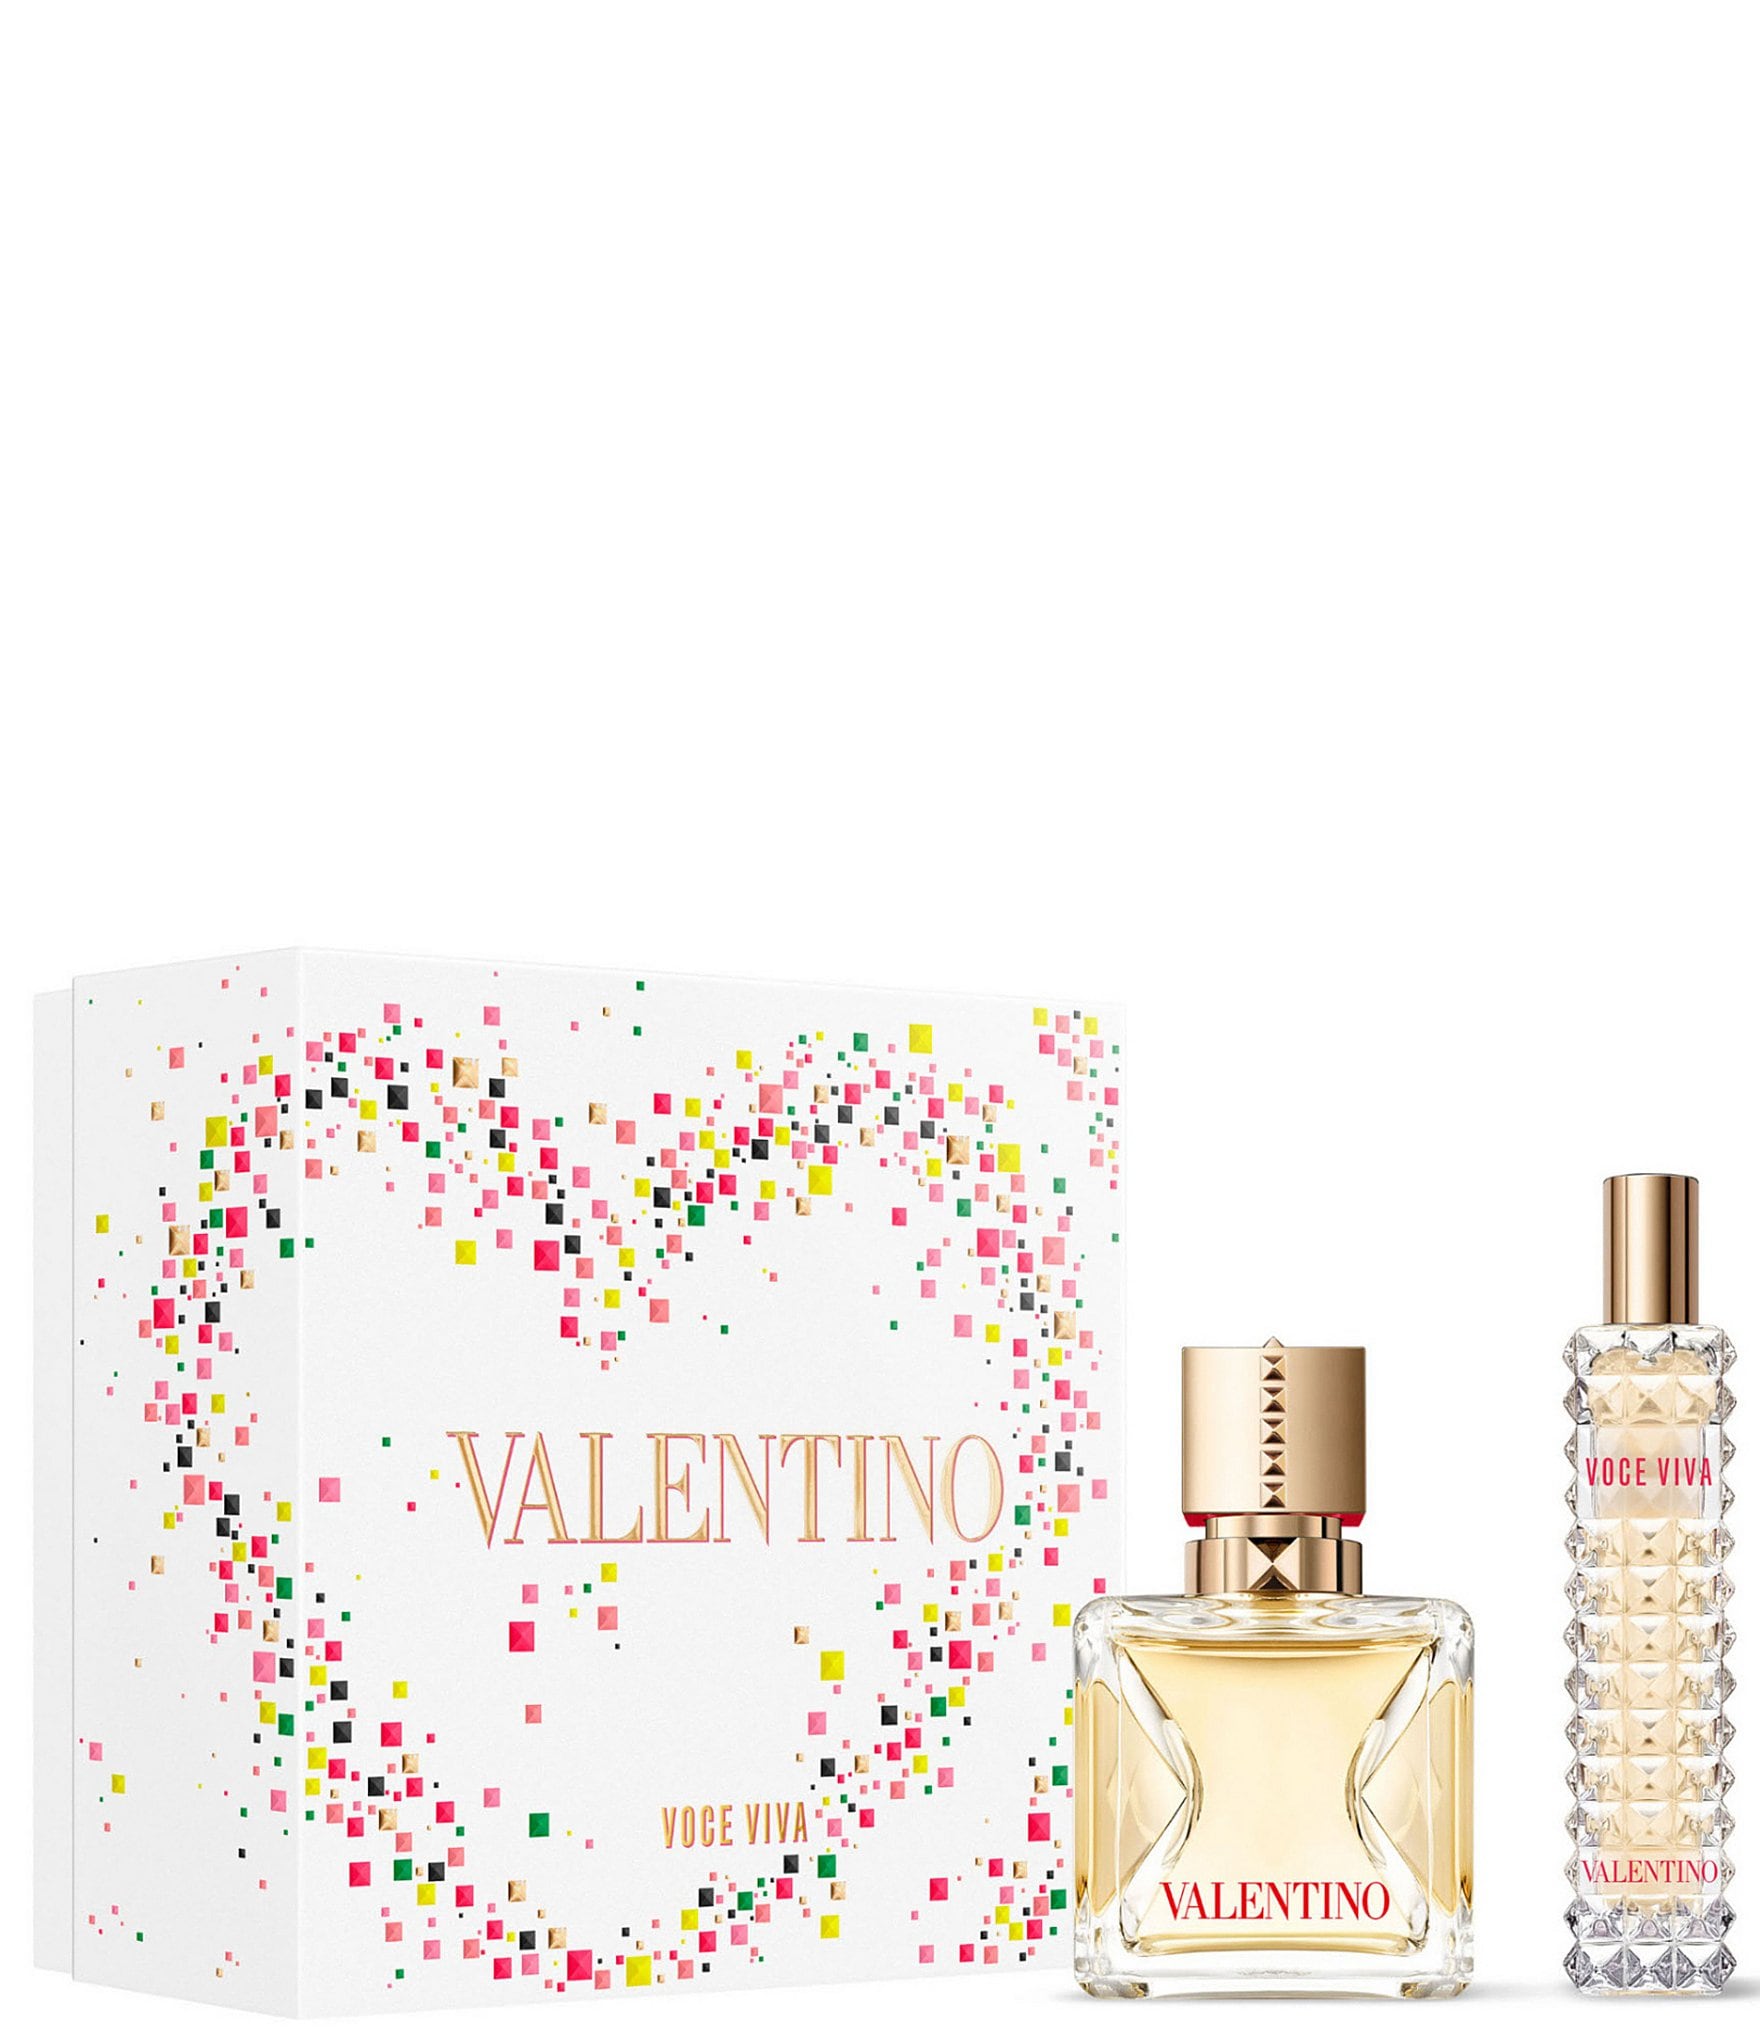 Assets Prospect point Valentino Voce Viva Women's Eau de Parfum 2-Piece Gift Set | Dillard's